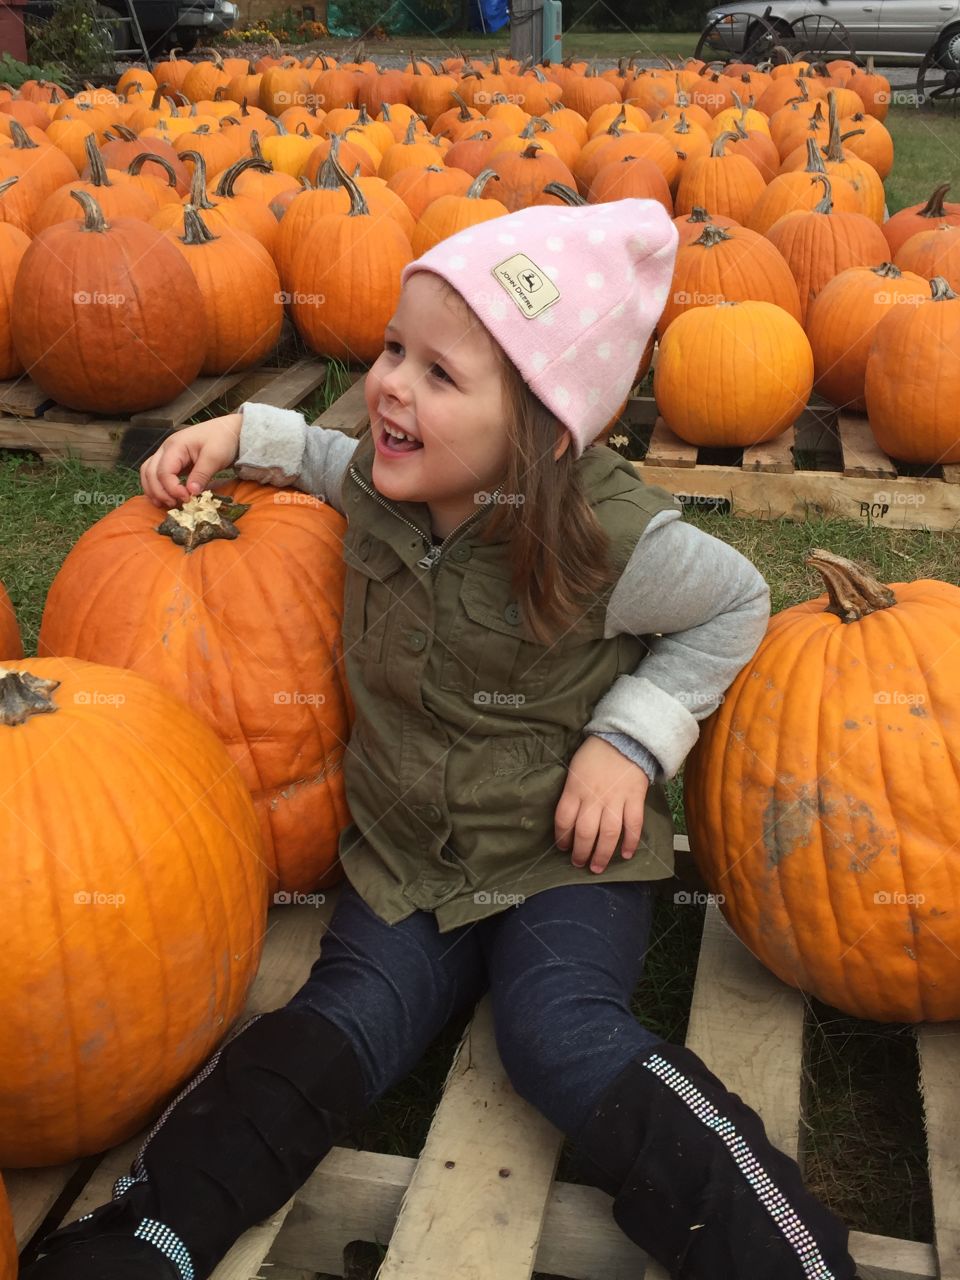 Sitting among the pumpkins